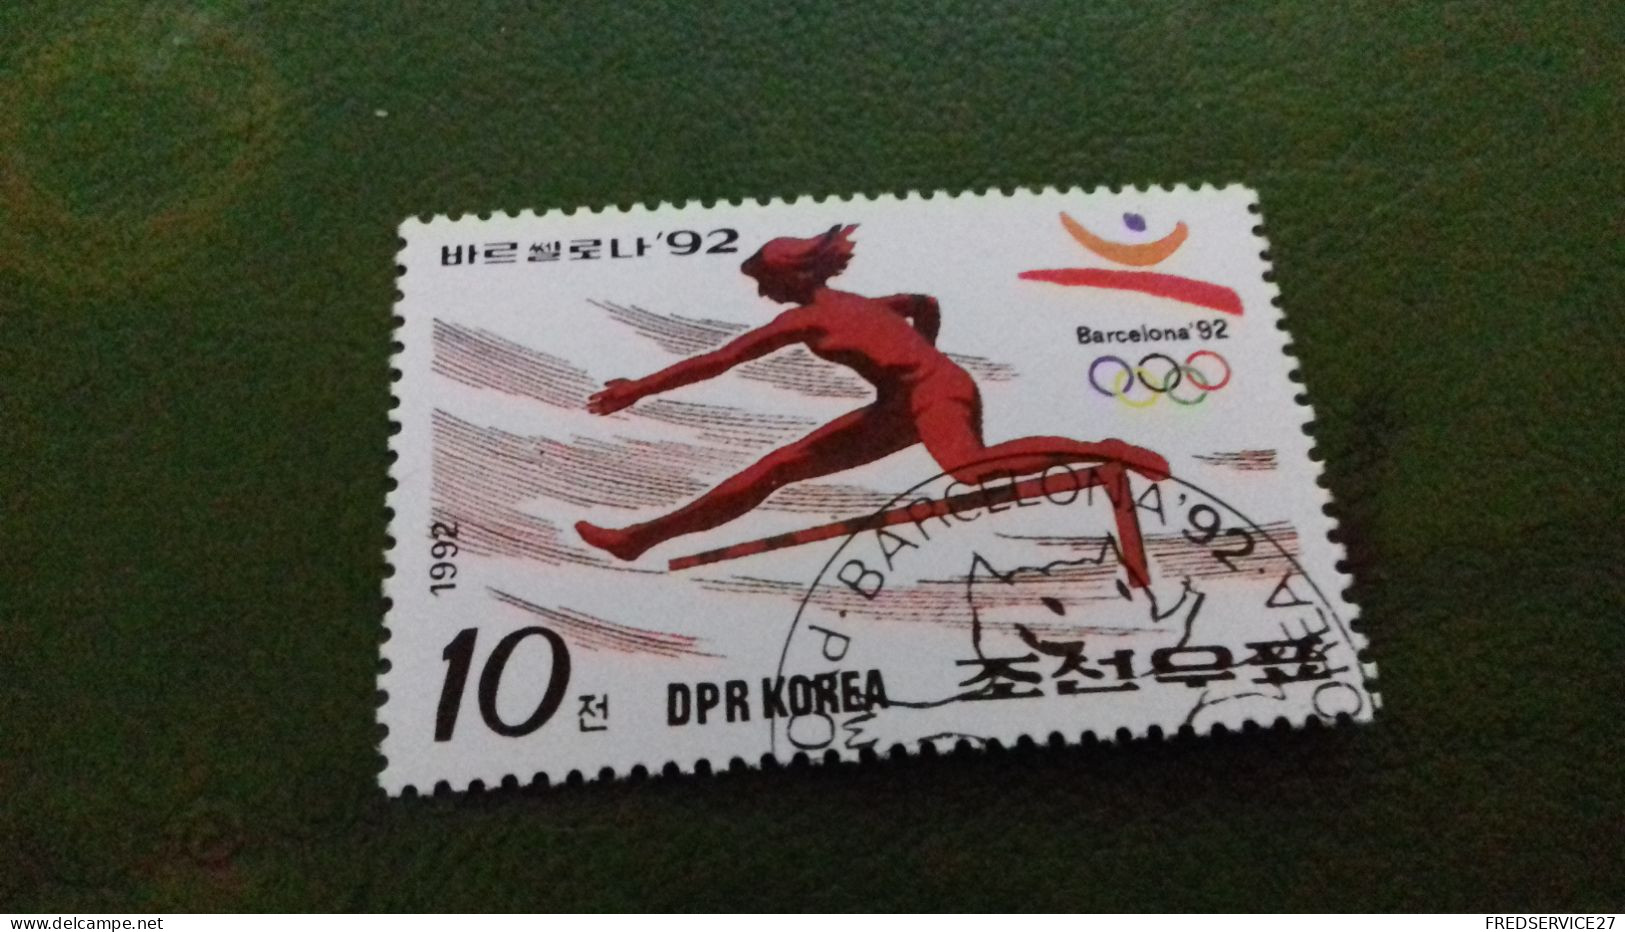 TIMBRE DPR KOREA BARCELONA 92 - Corée Du Nord